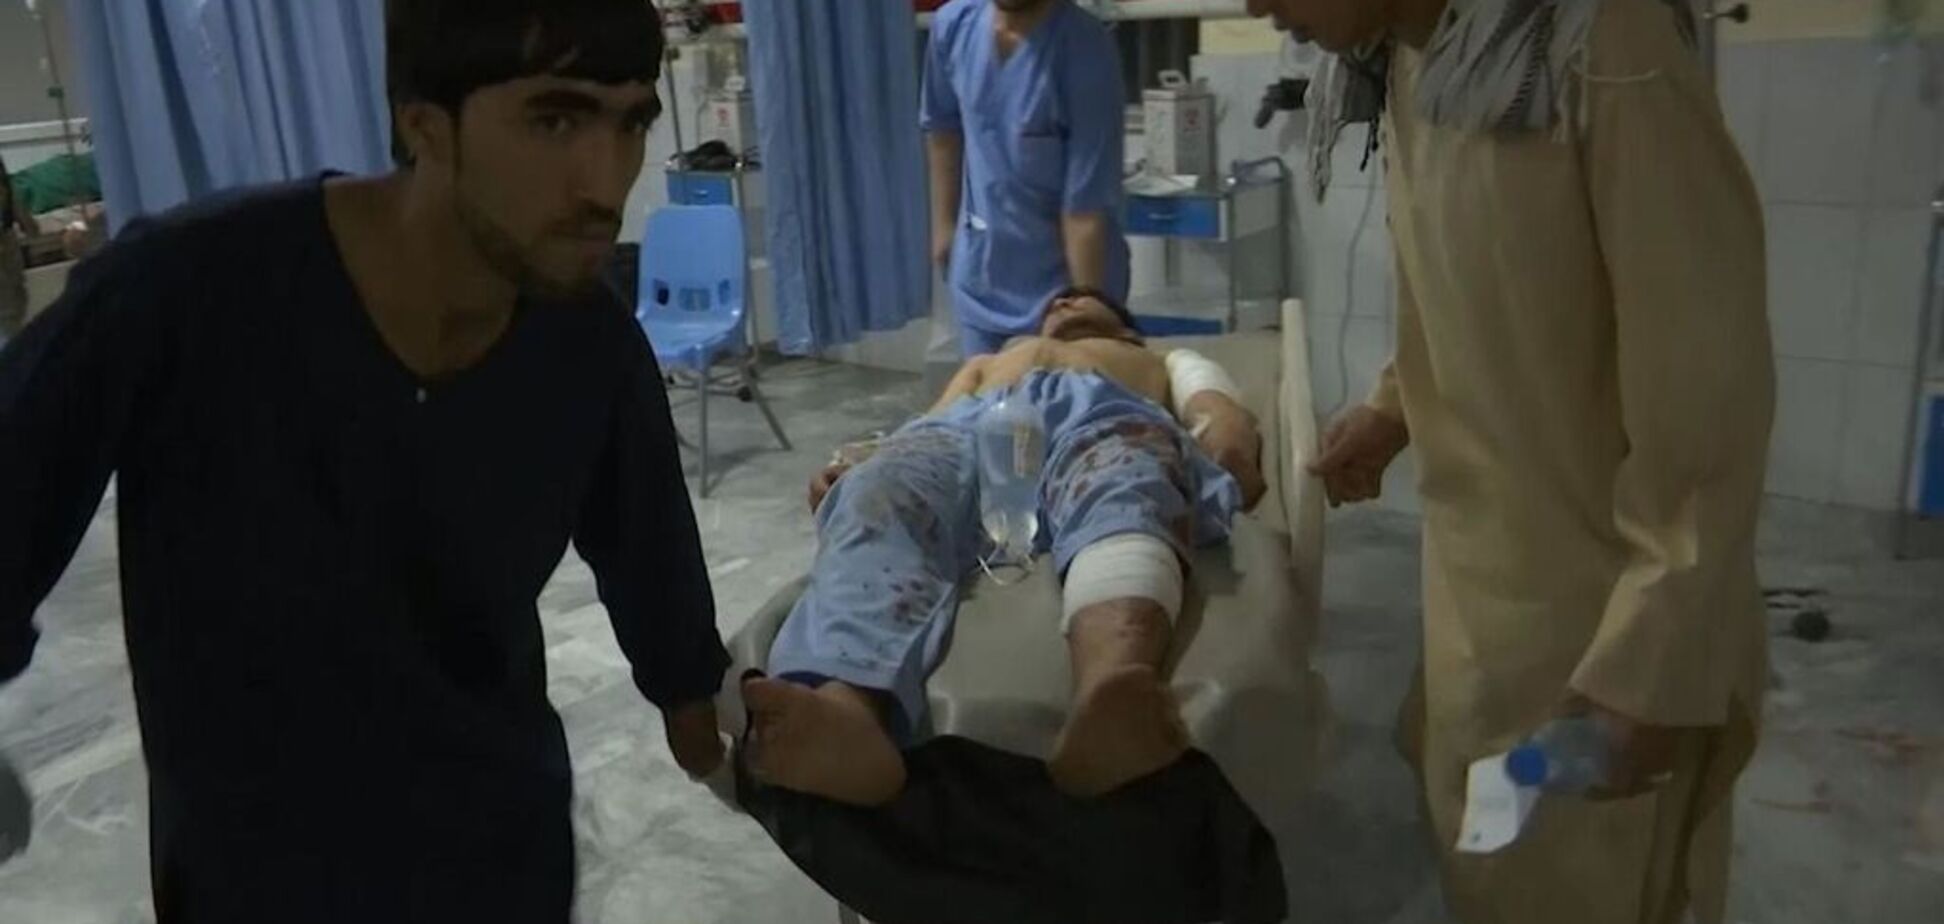 Тіла не встигали виносити: в Афганістані вибух на весіллі вбив 63 особи. Фото і відео 18+